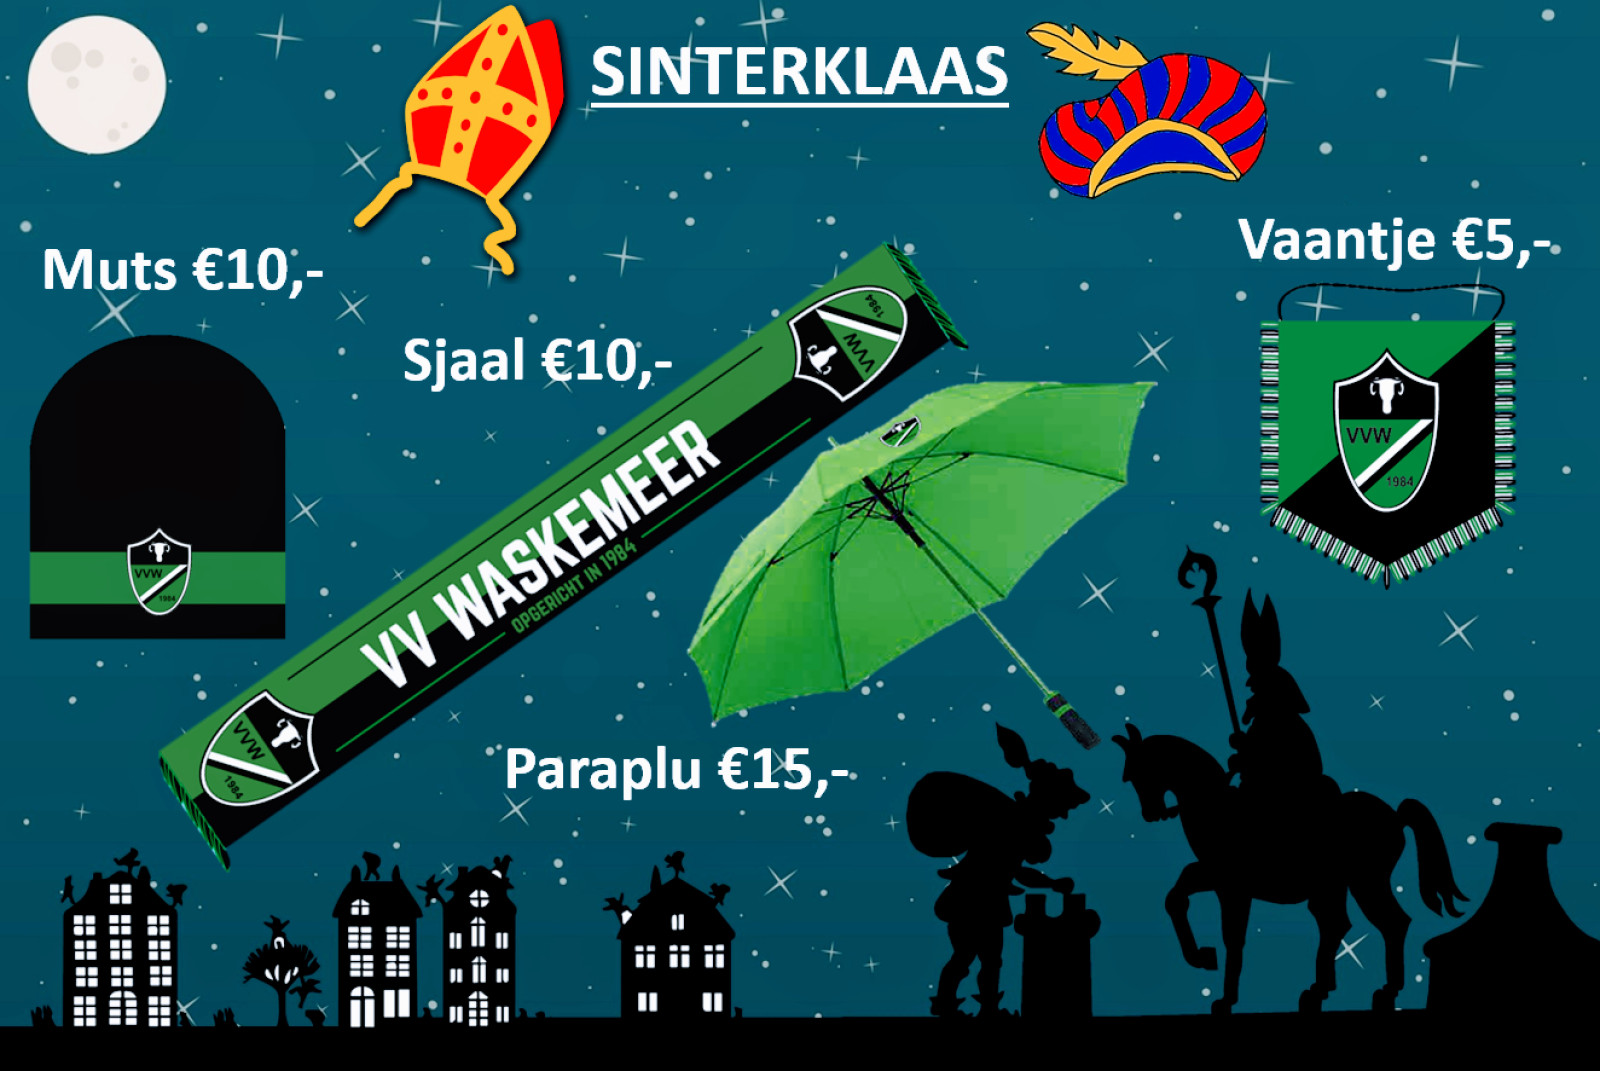 Sinterklaas merchandise